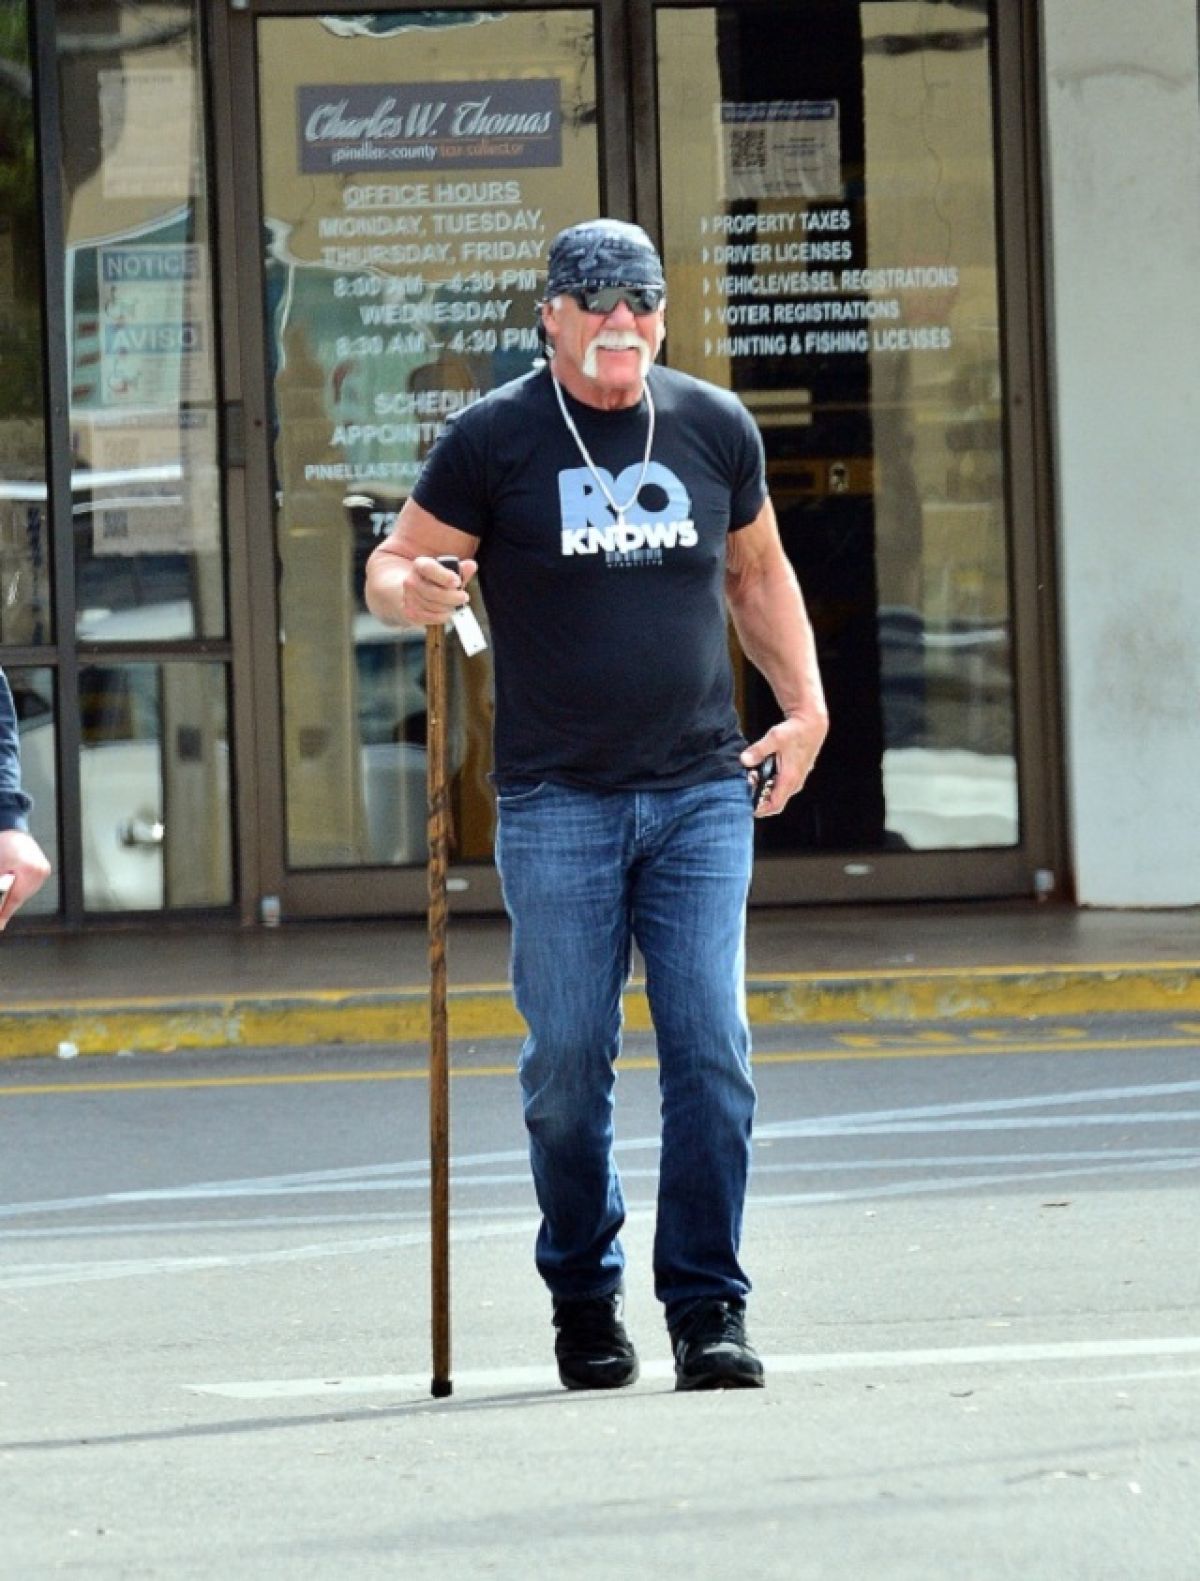 'उनकी टांगों में जान नहीं है'- लाठी सहारे चलते दिखाई दिए मशहूर WWE रैसलर